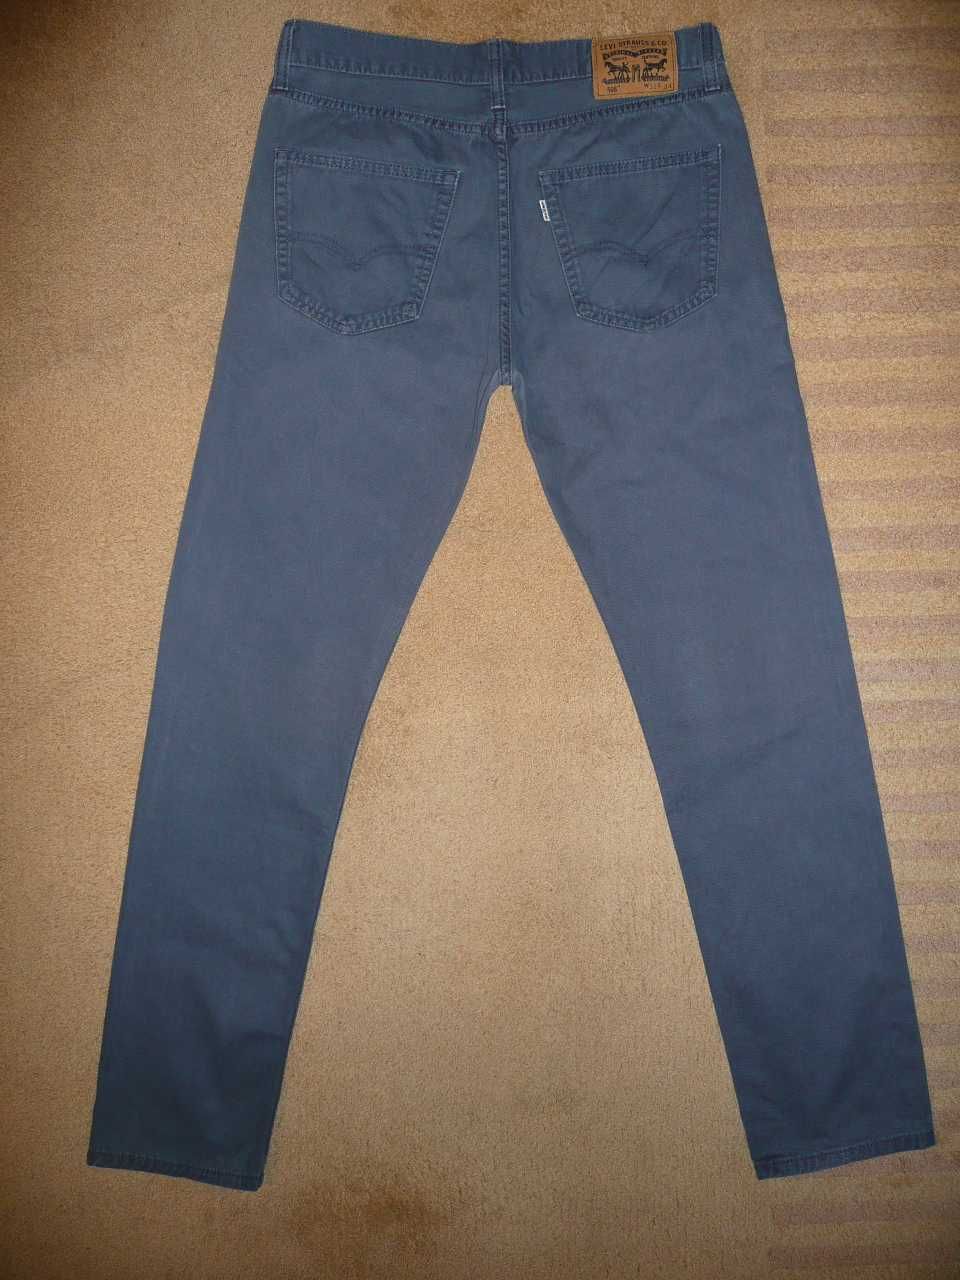 Spodnie dżinsy LEVIS 508 W32/L34=44,5/112m jeansy